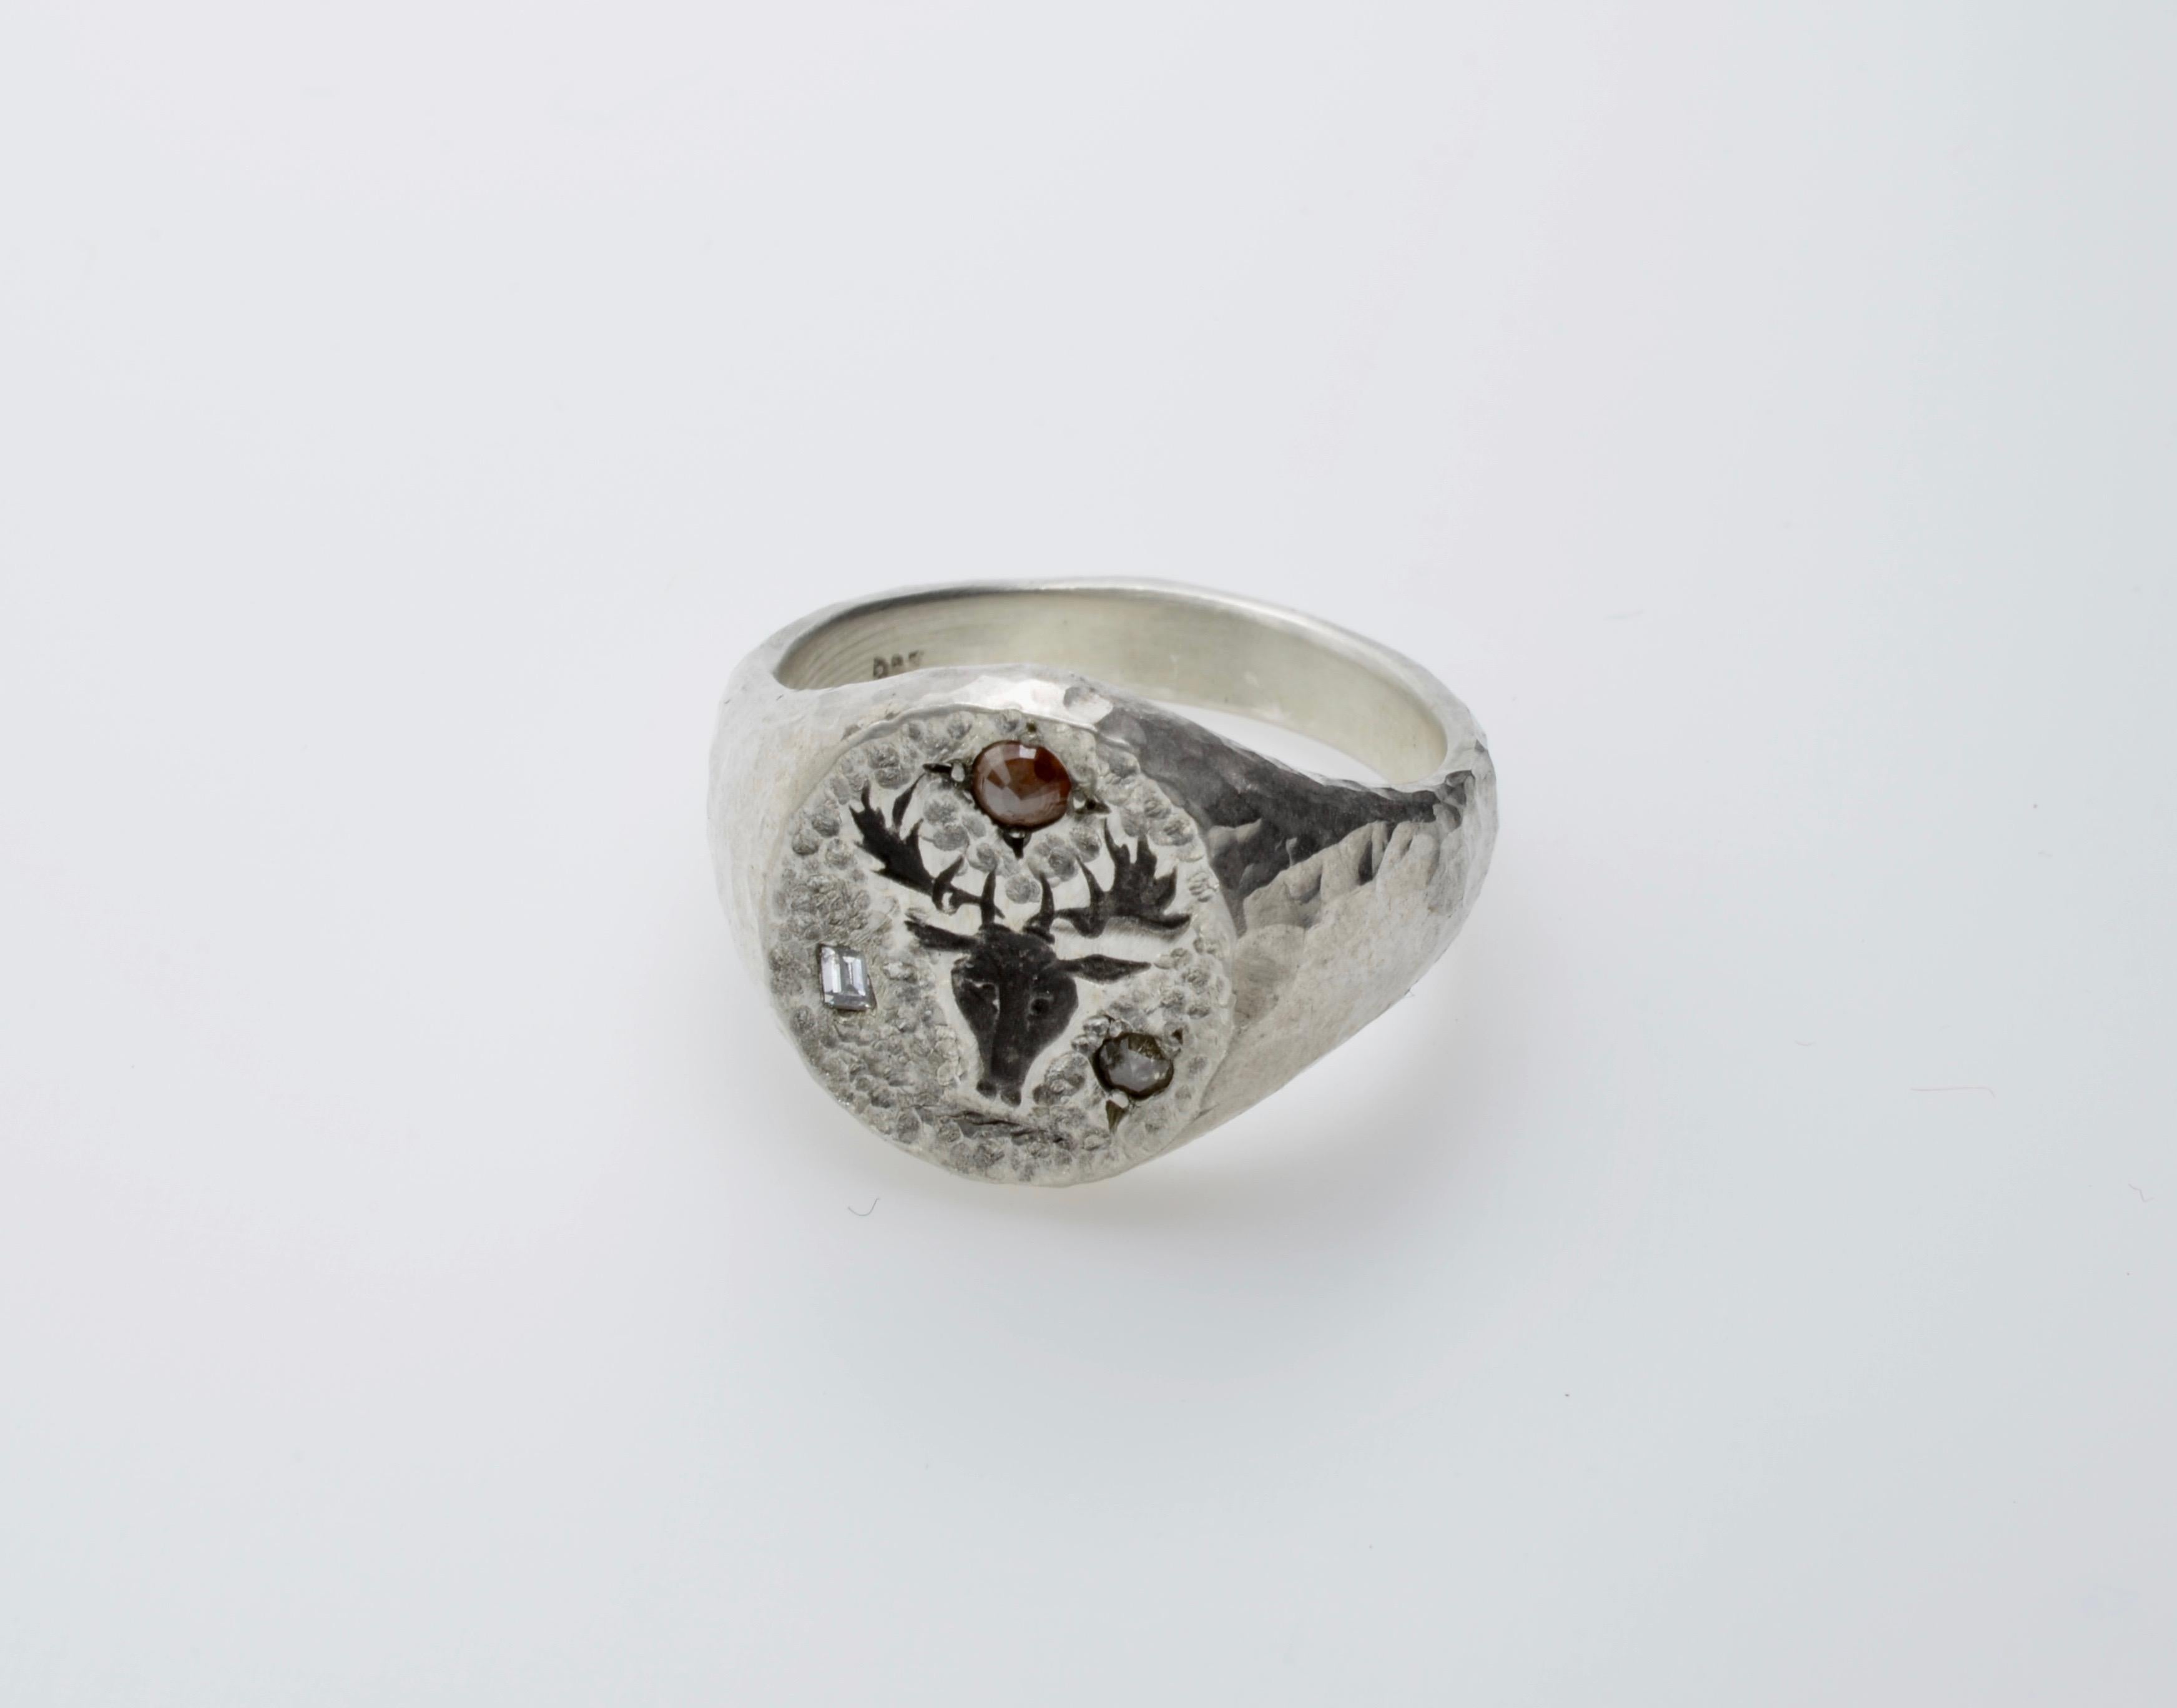 Traditionelle Form eines Siegelrings, mit der Besonderheit der gehämmerten Textur in Silber und mit Diamanten besetzt. Der eine Baguette-Diamant und die beiden runden Diamanten haben ein Gesamtgewicht von 0,15 Karat.  Die Diamanten verleihen dem